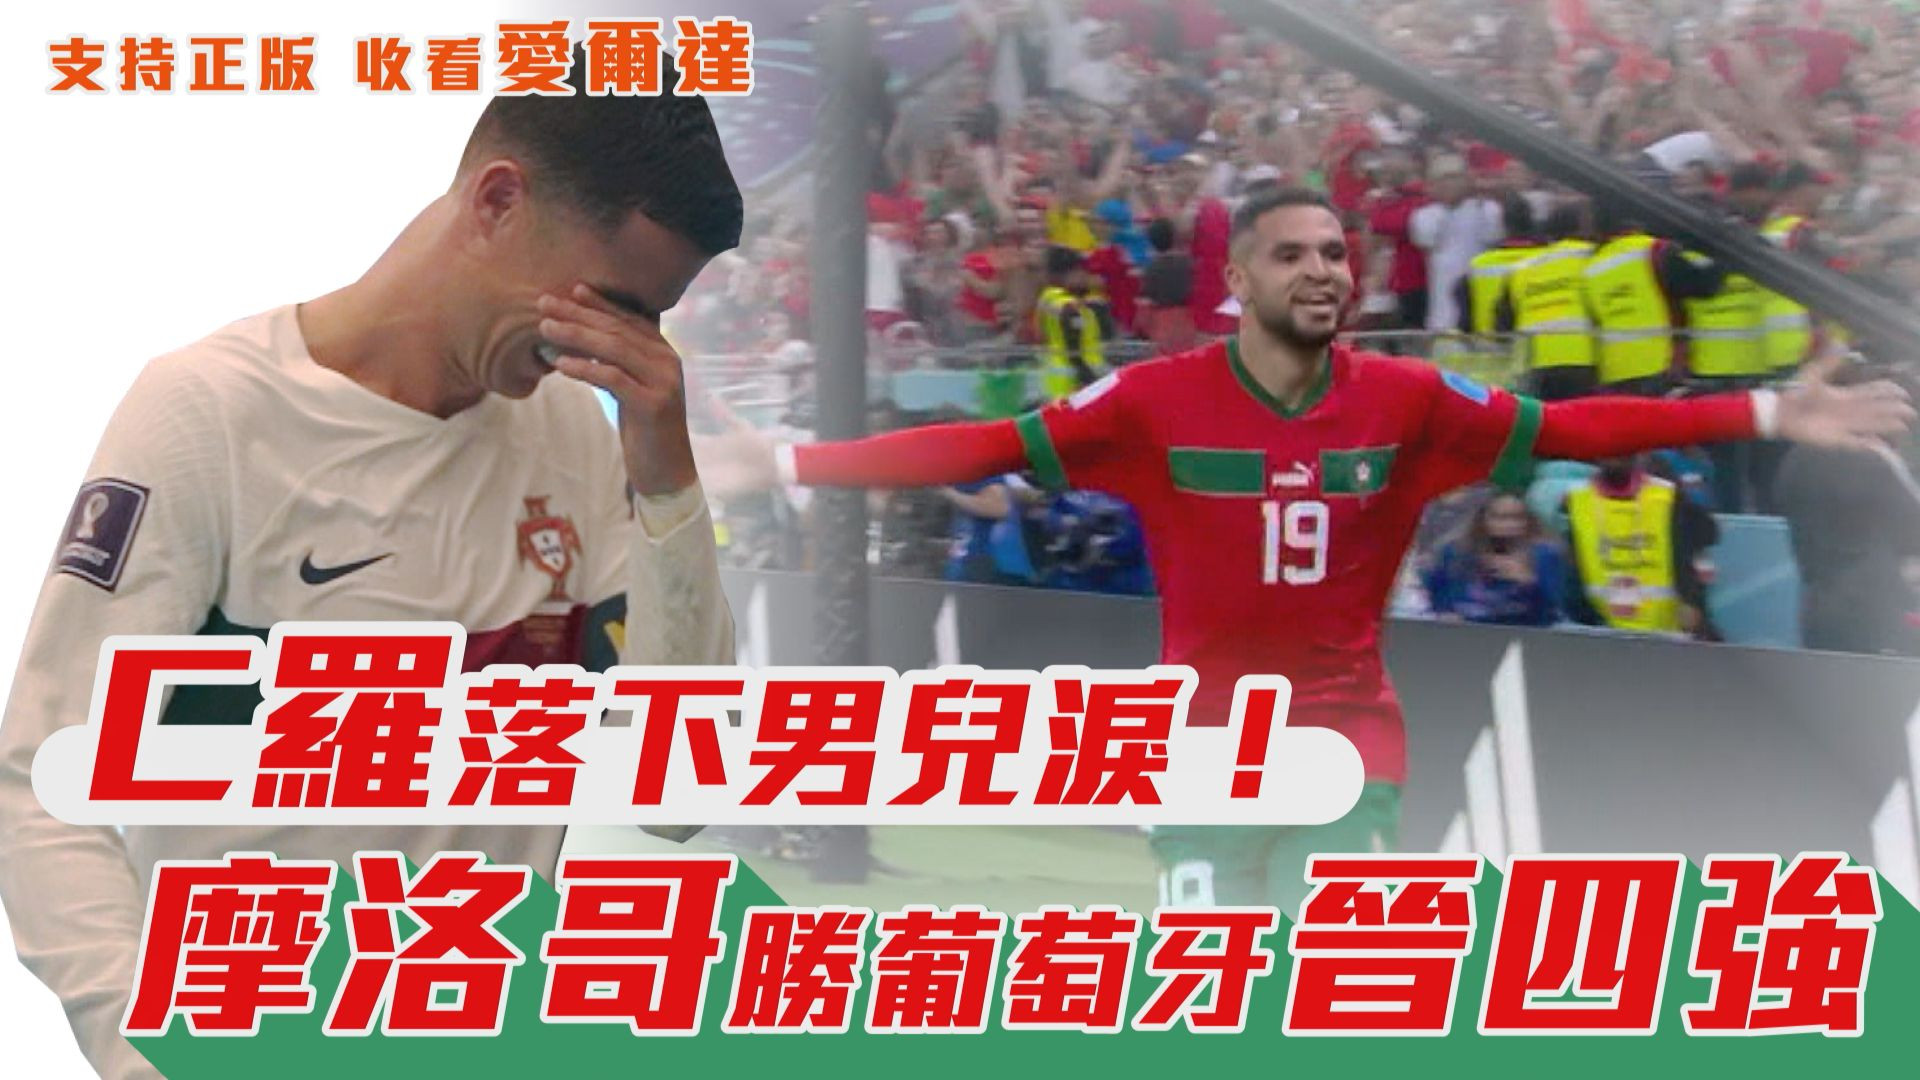 【世足快報】C羅落下男兒淚! 摩洛哥勝葡萄牙晉四強